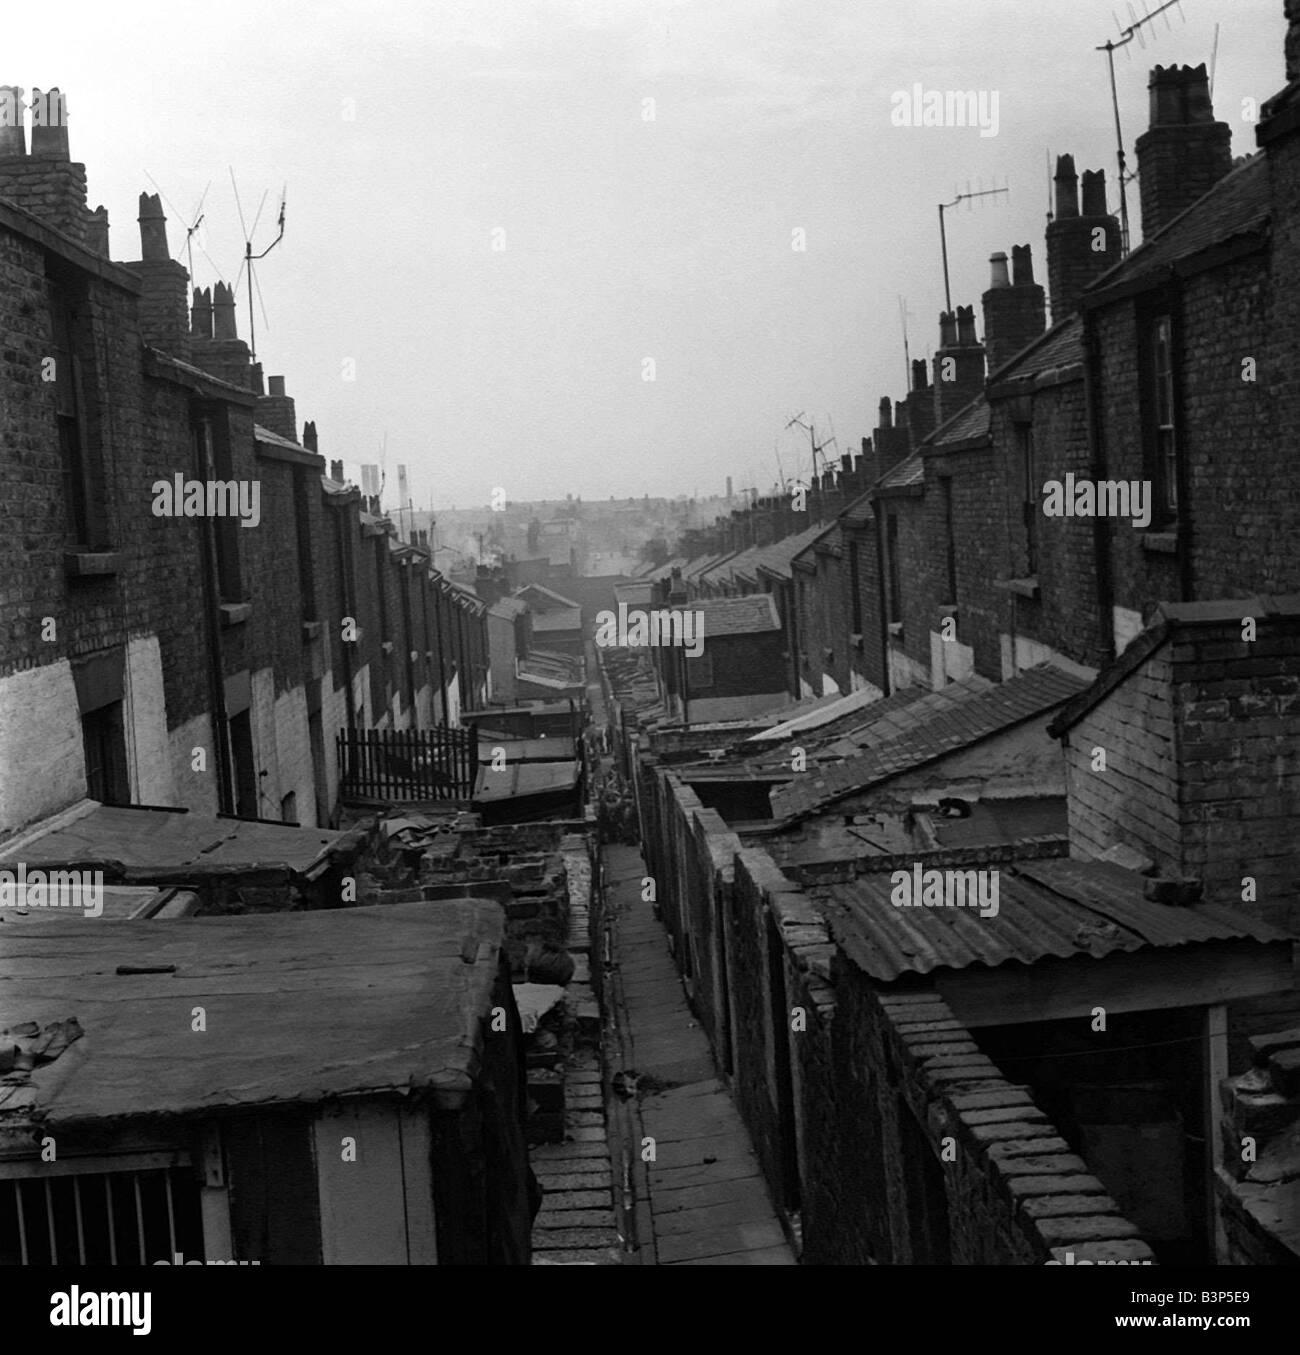 Prises d'une série de photos montrant des taudis dans la Grande-Bretagne d'après-guerre Ces photos ont été prises pour mettre en lumière le sort de nombreux Banque D'Images